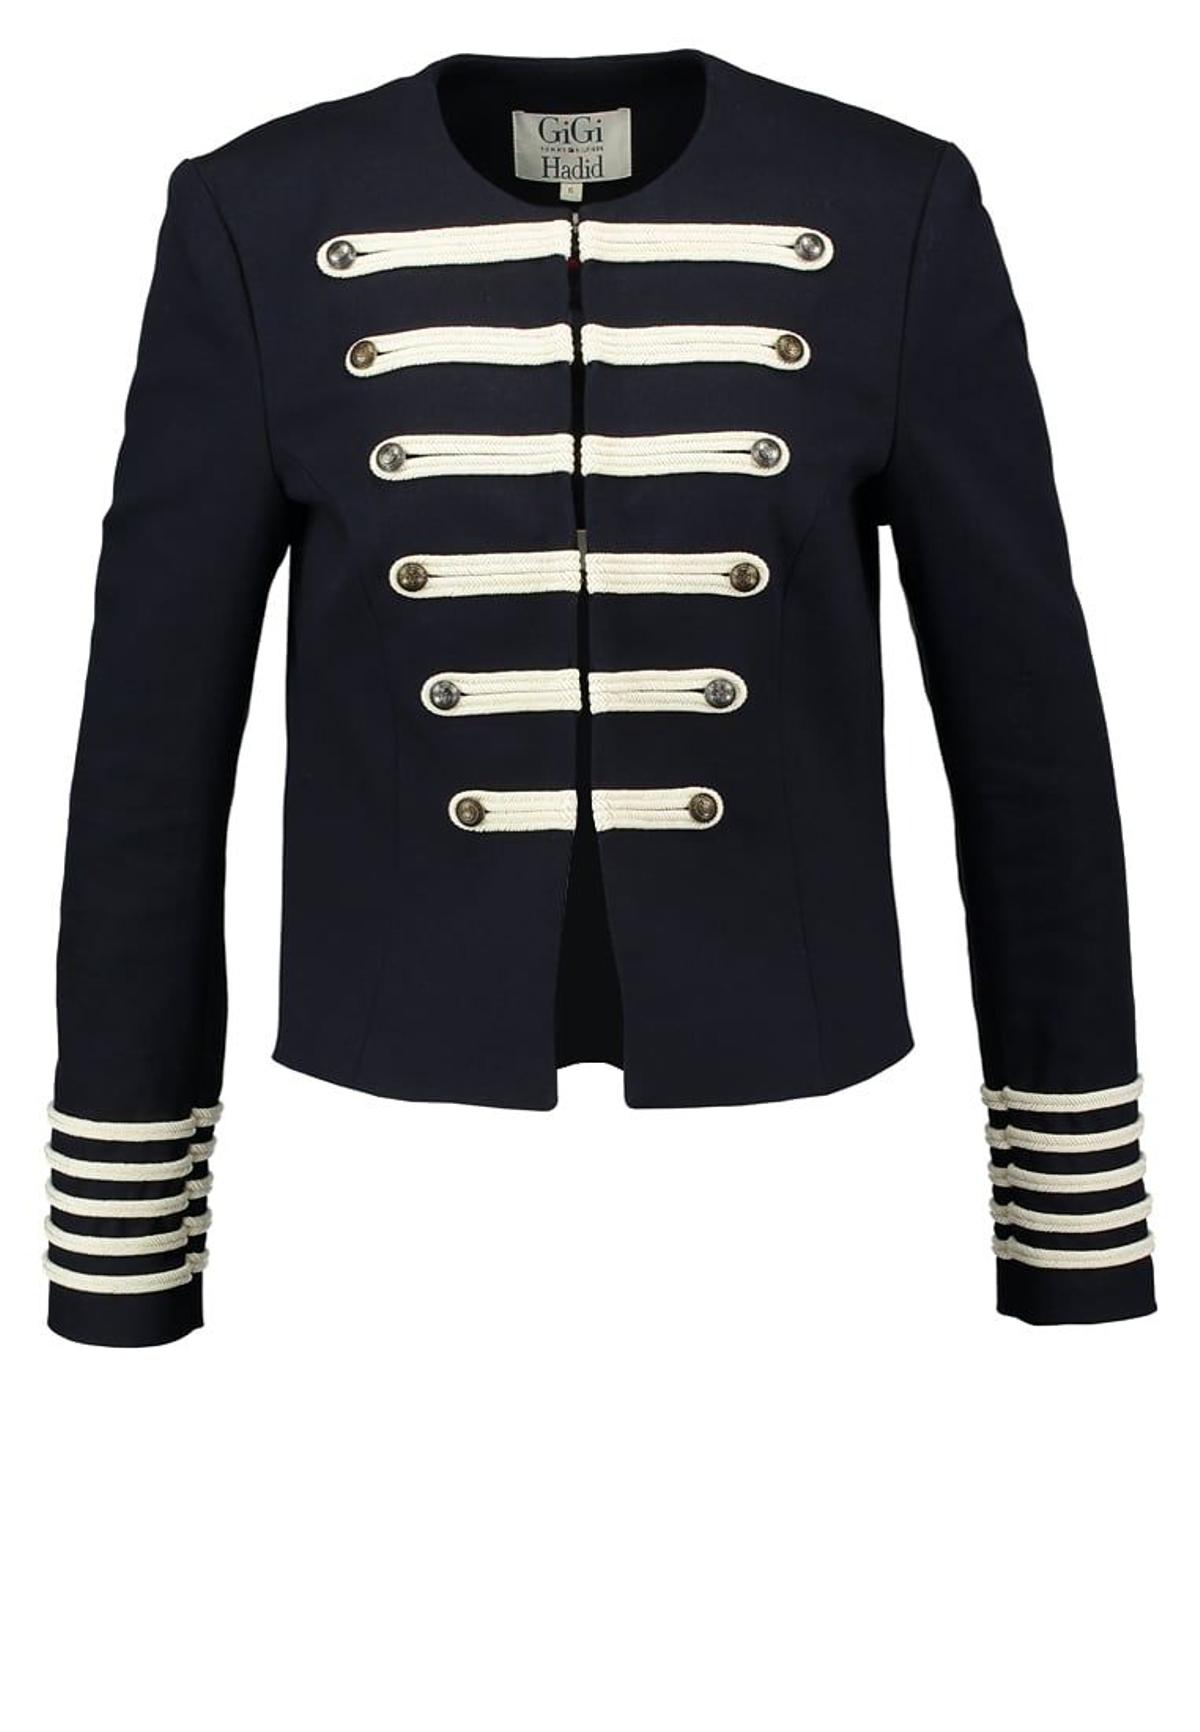 Tommy Hilfiger x Gigi Hadid: chaqueta militar